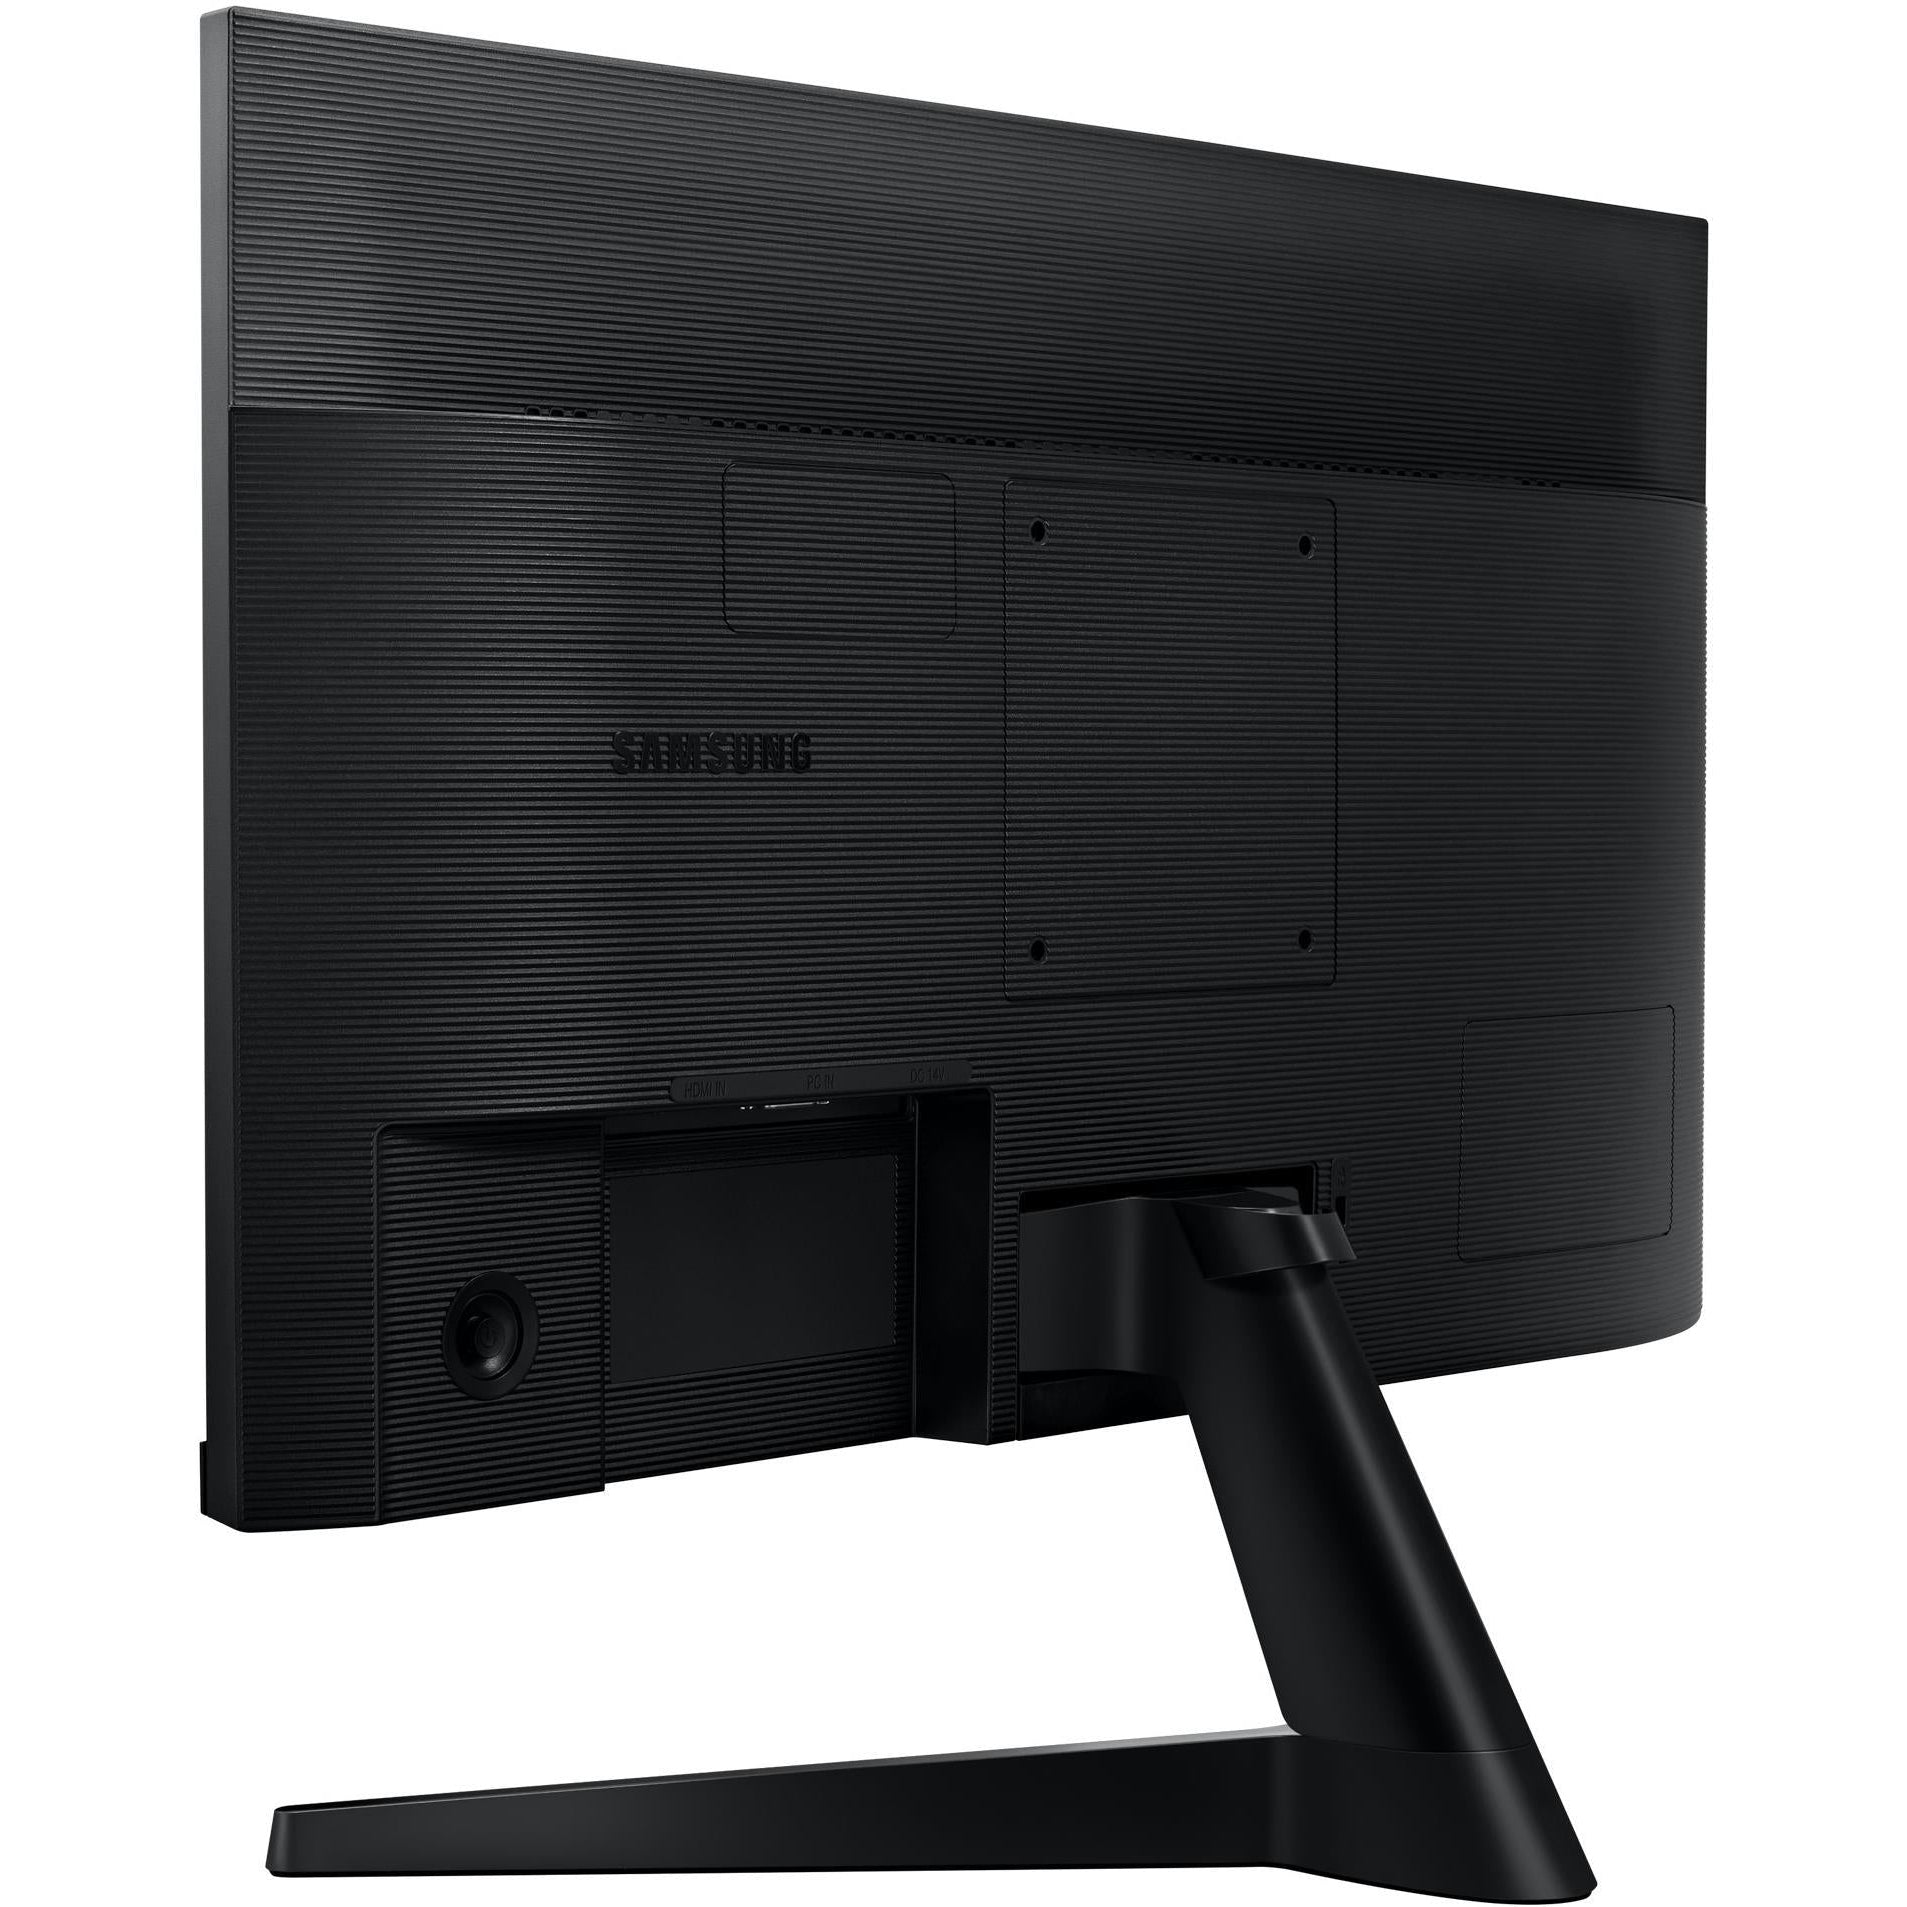 Samsung F24T350FHR 24" Full HD IPS FreeSync Monitor